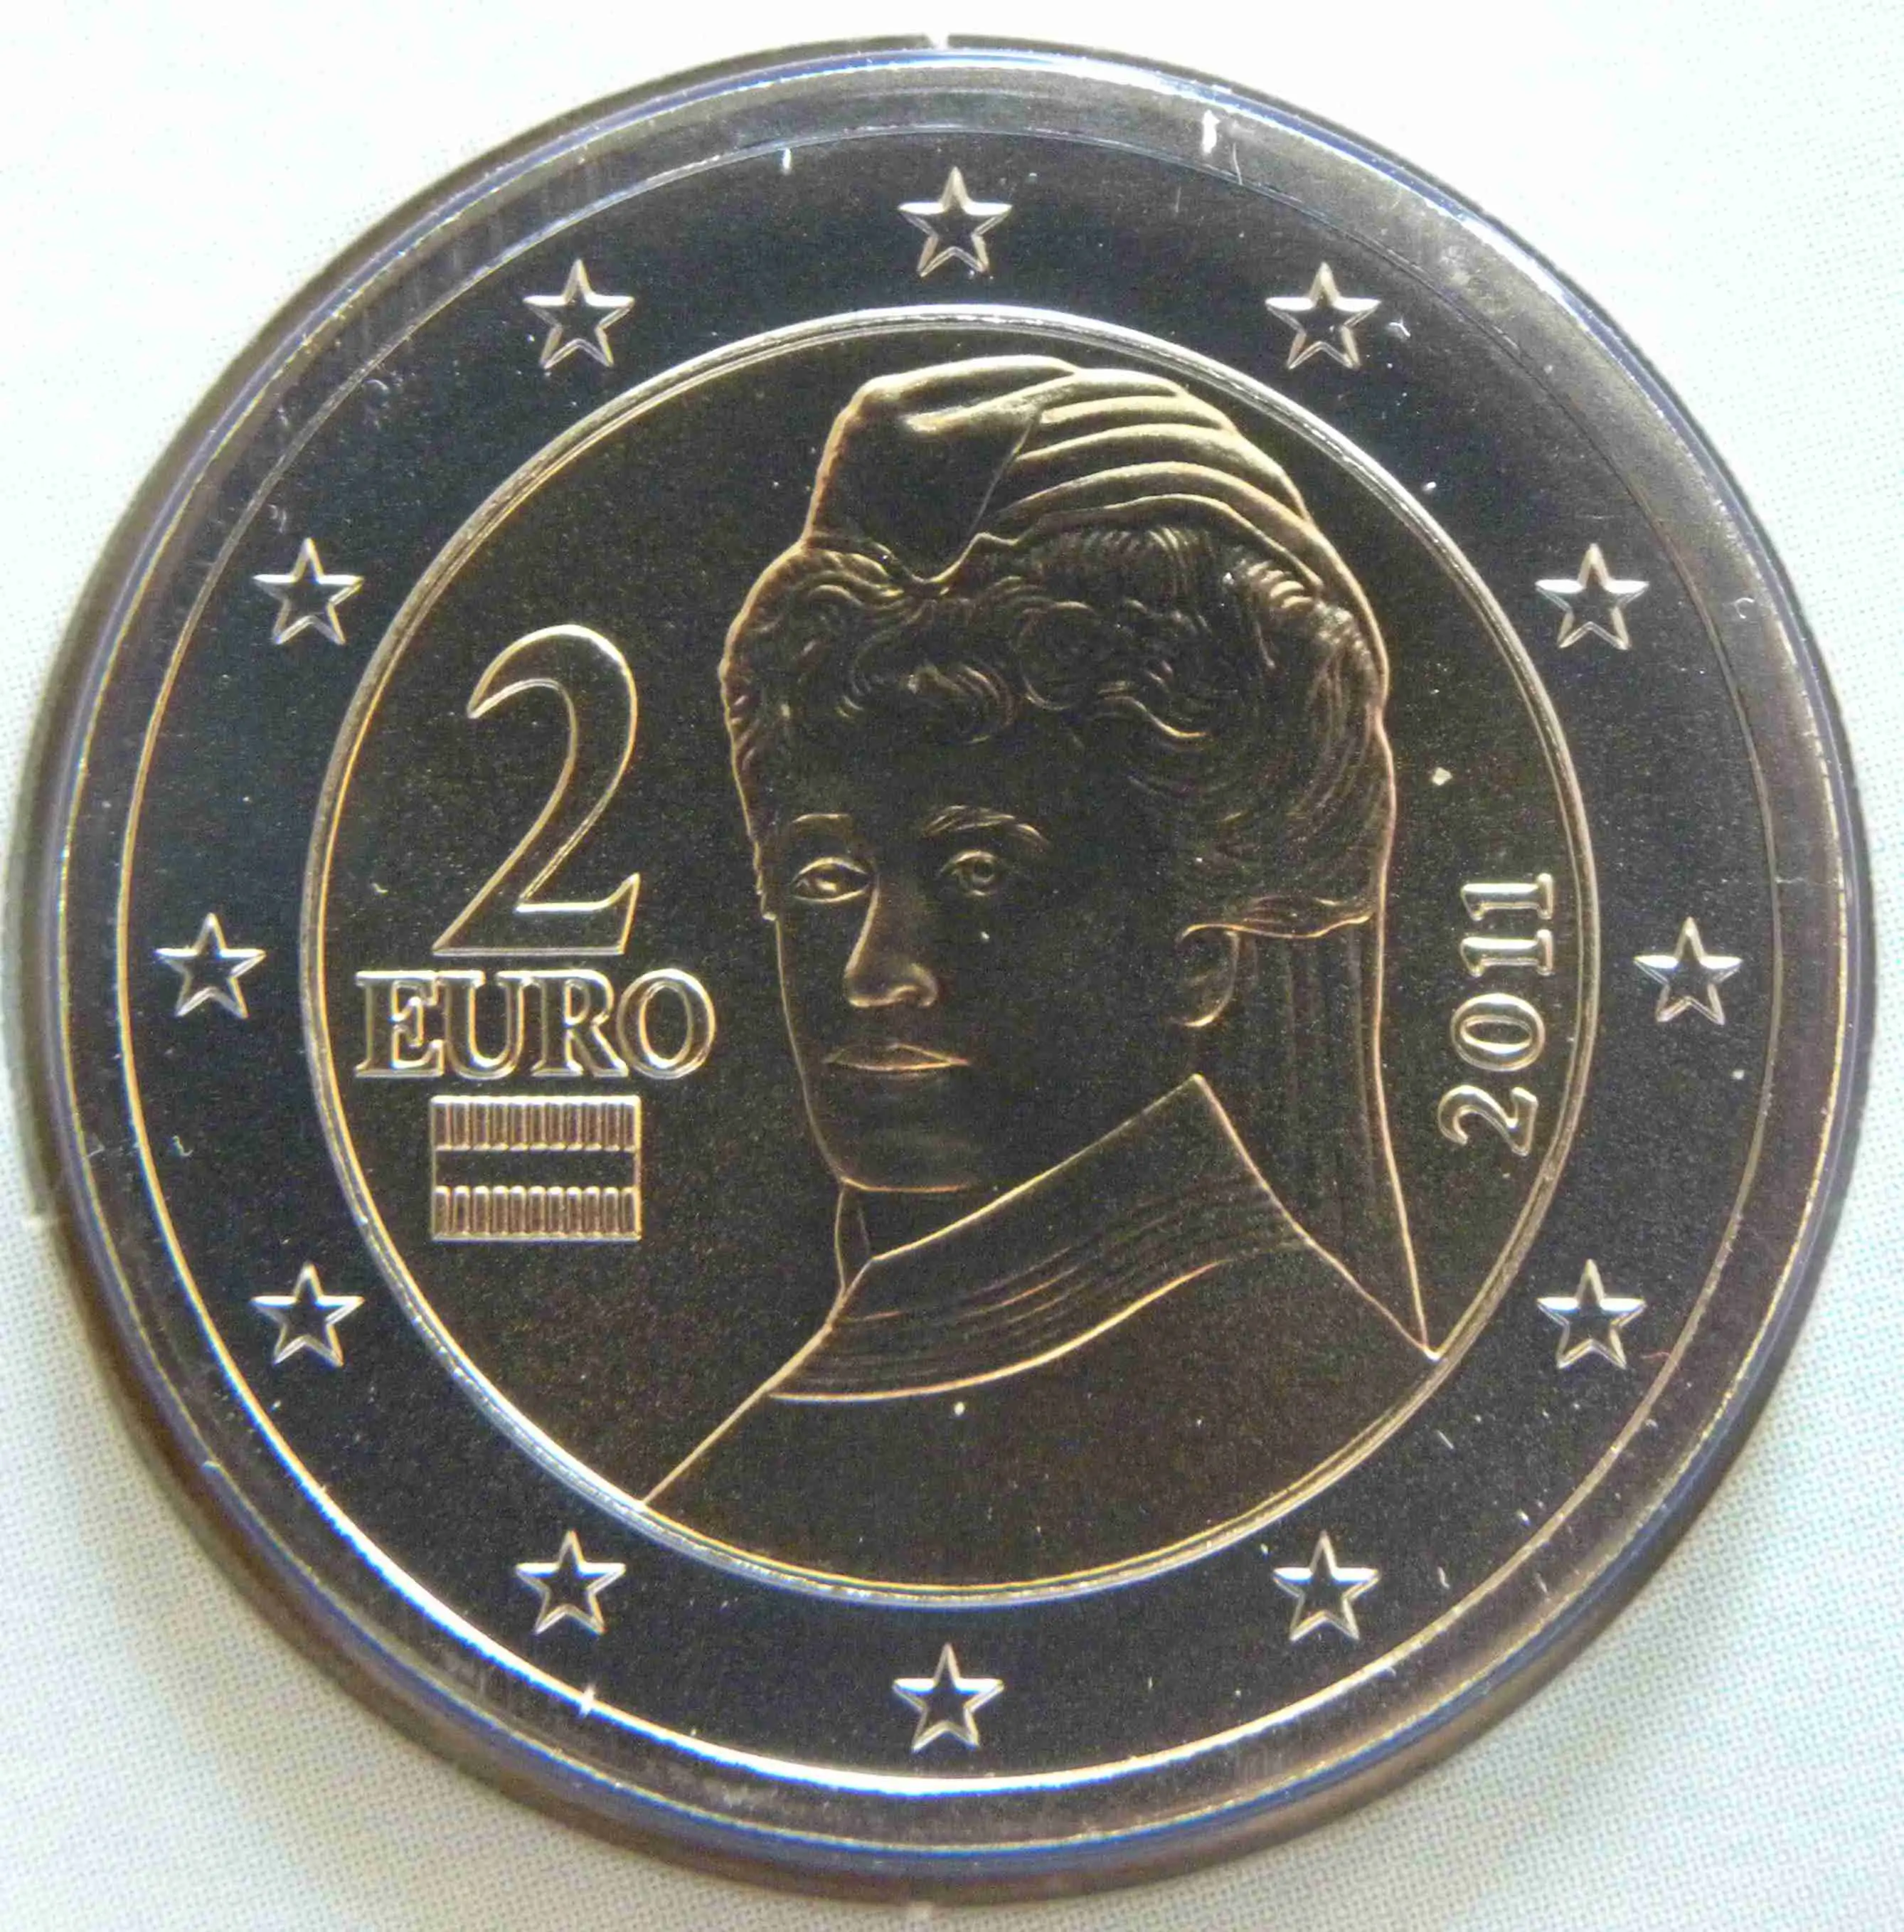 Austria 2 Euro Coin 2011 - euro-coins.tv - The Online ...